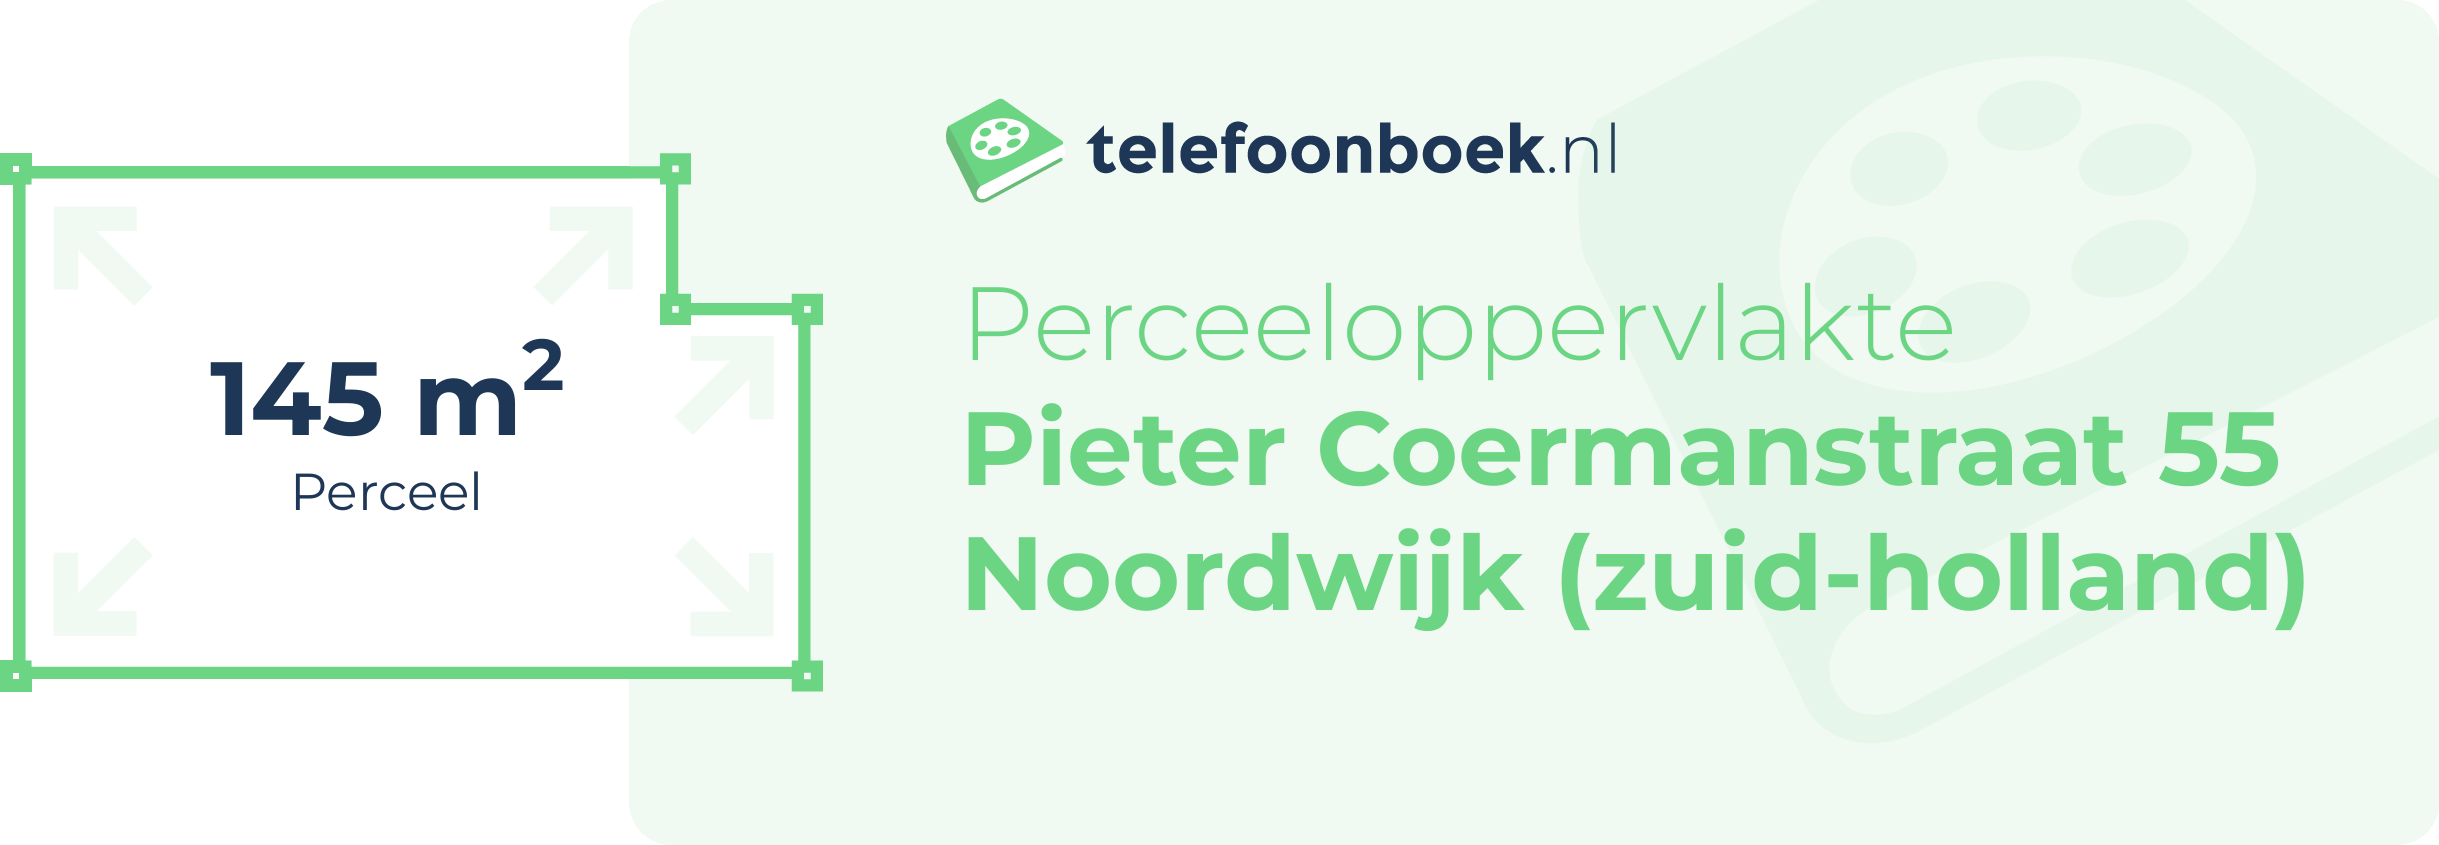 Perceeloppervlakte Pieter Coermanstraat 55 Noordwijk (Zuid-Holland)